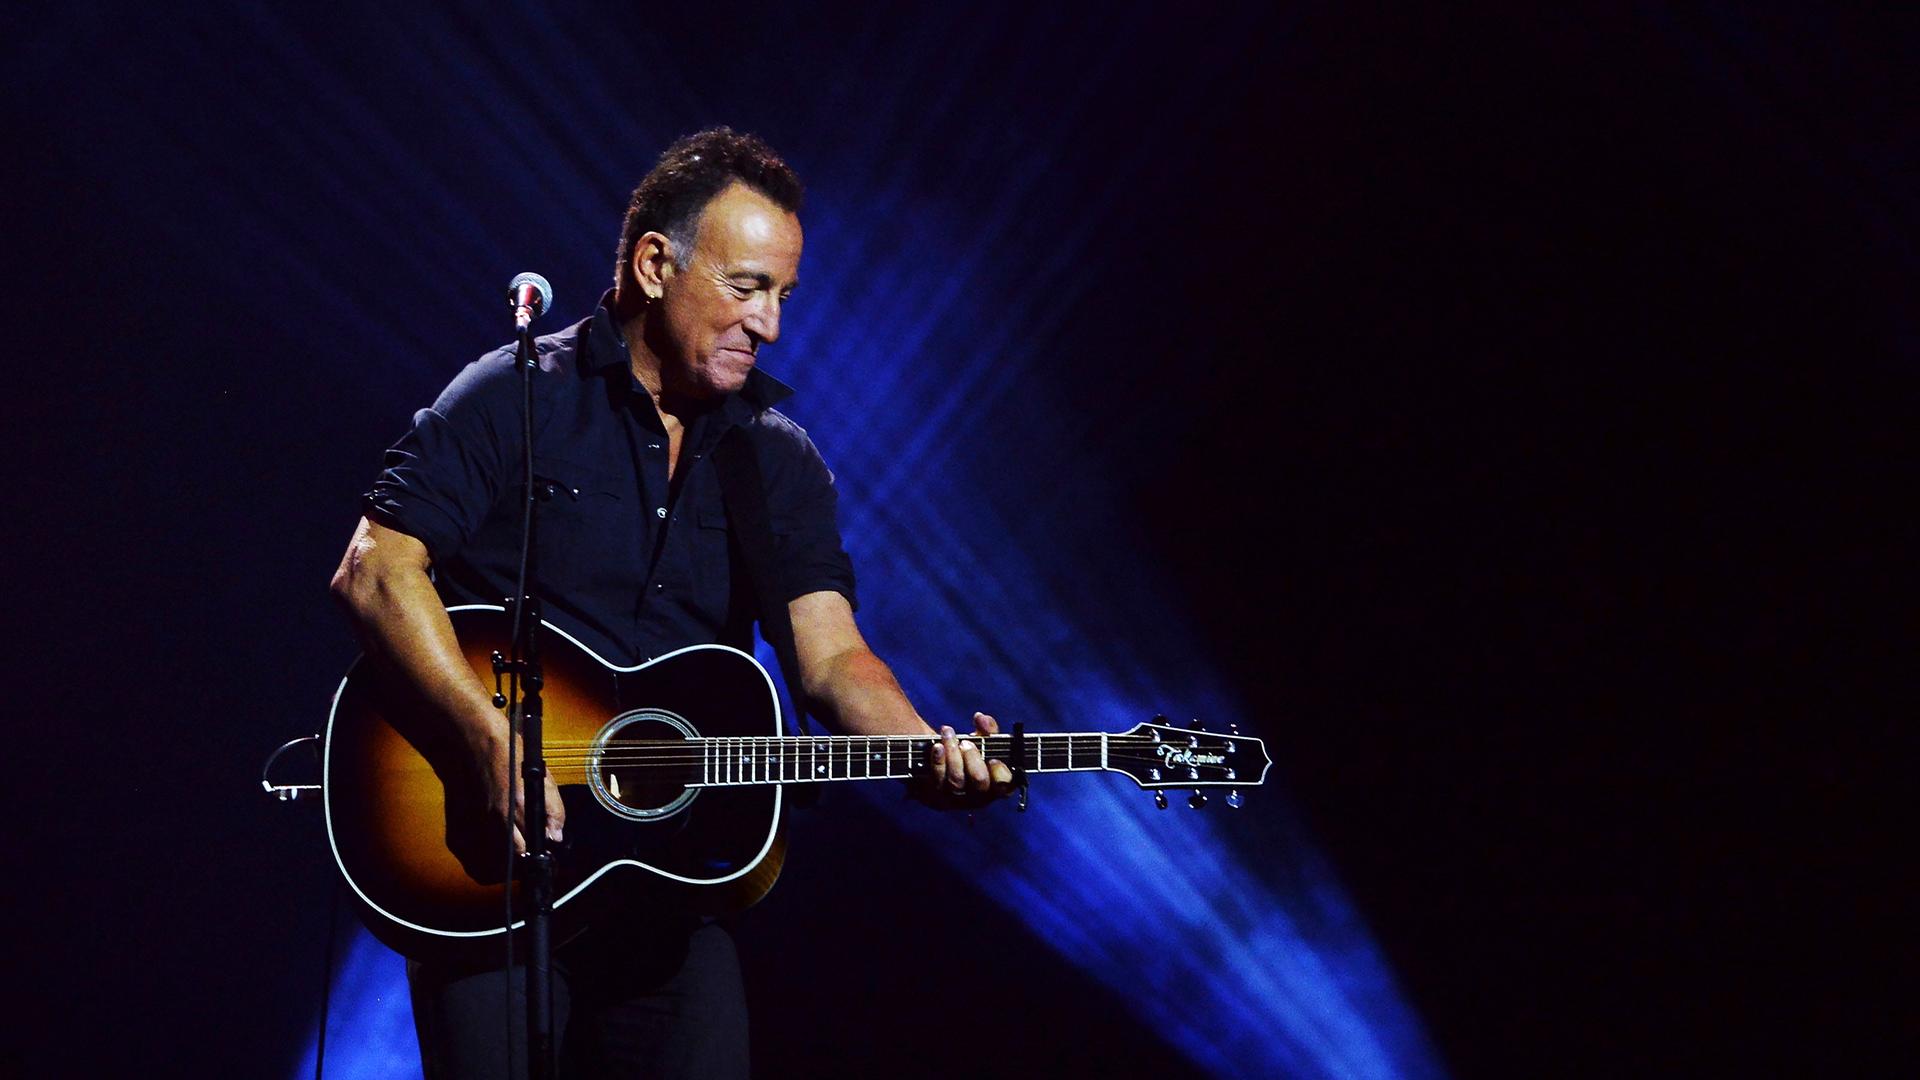 Bruce Springsteen steht auf einer Bühne und spielt eine akustische Gitarre. Der Hintergrund ist in blaues Licht getaucht.